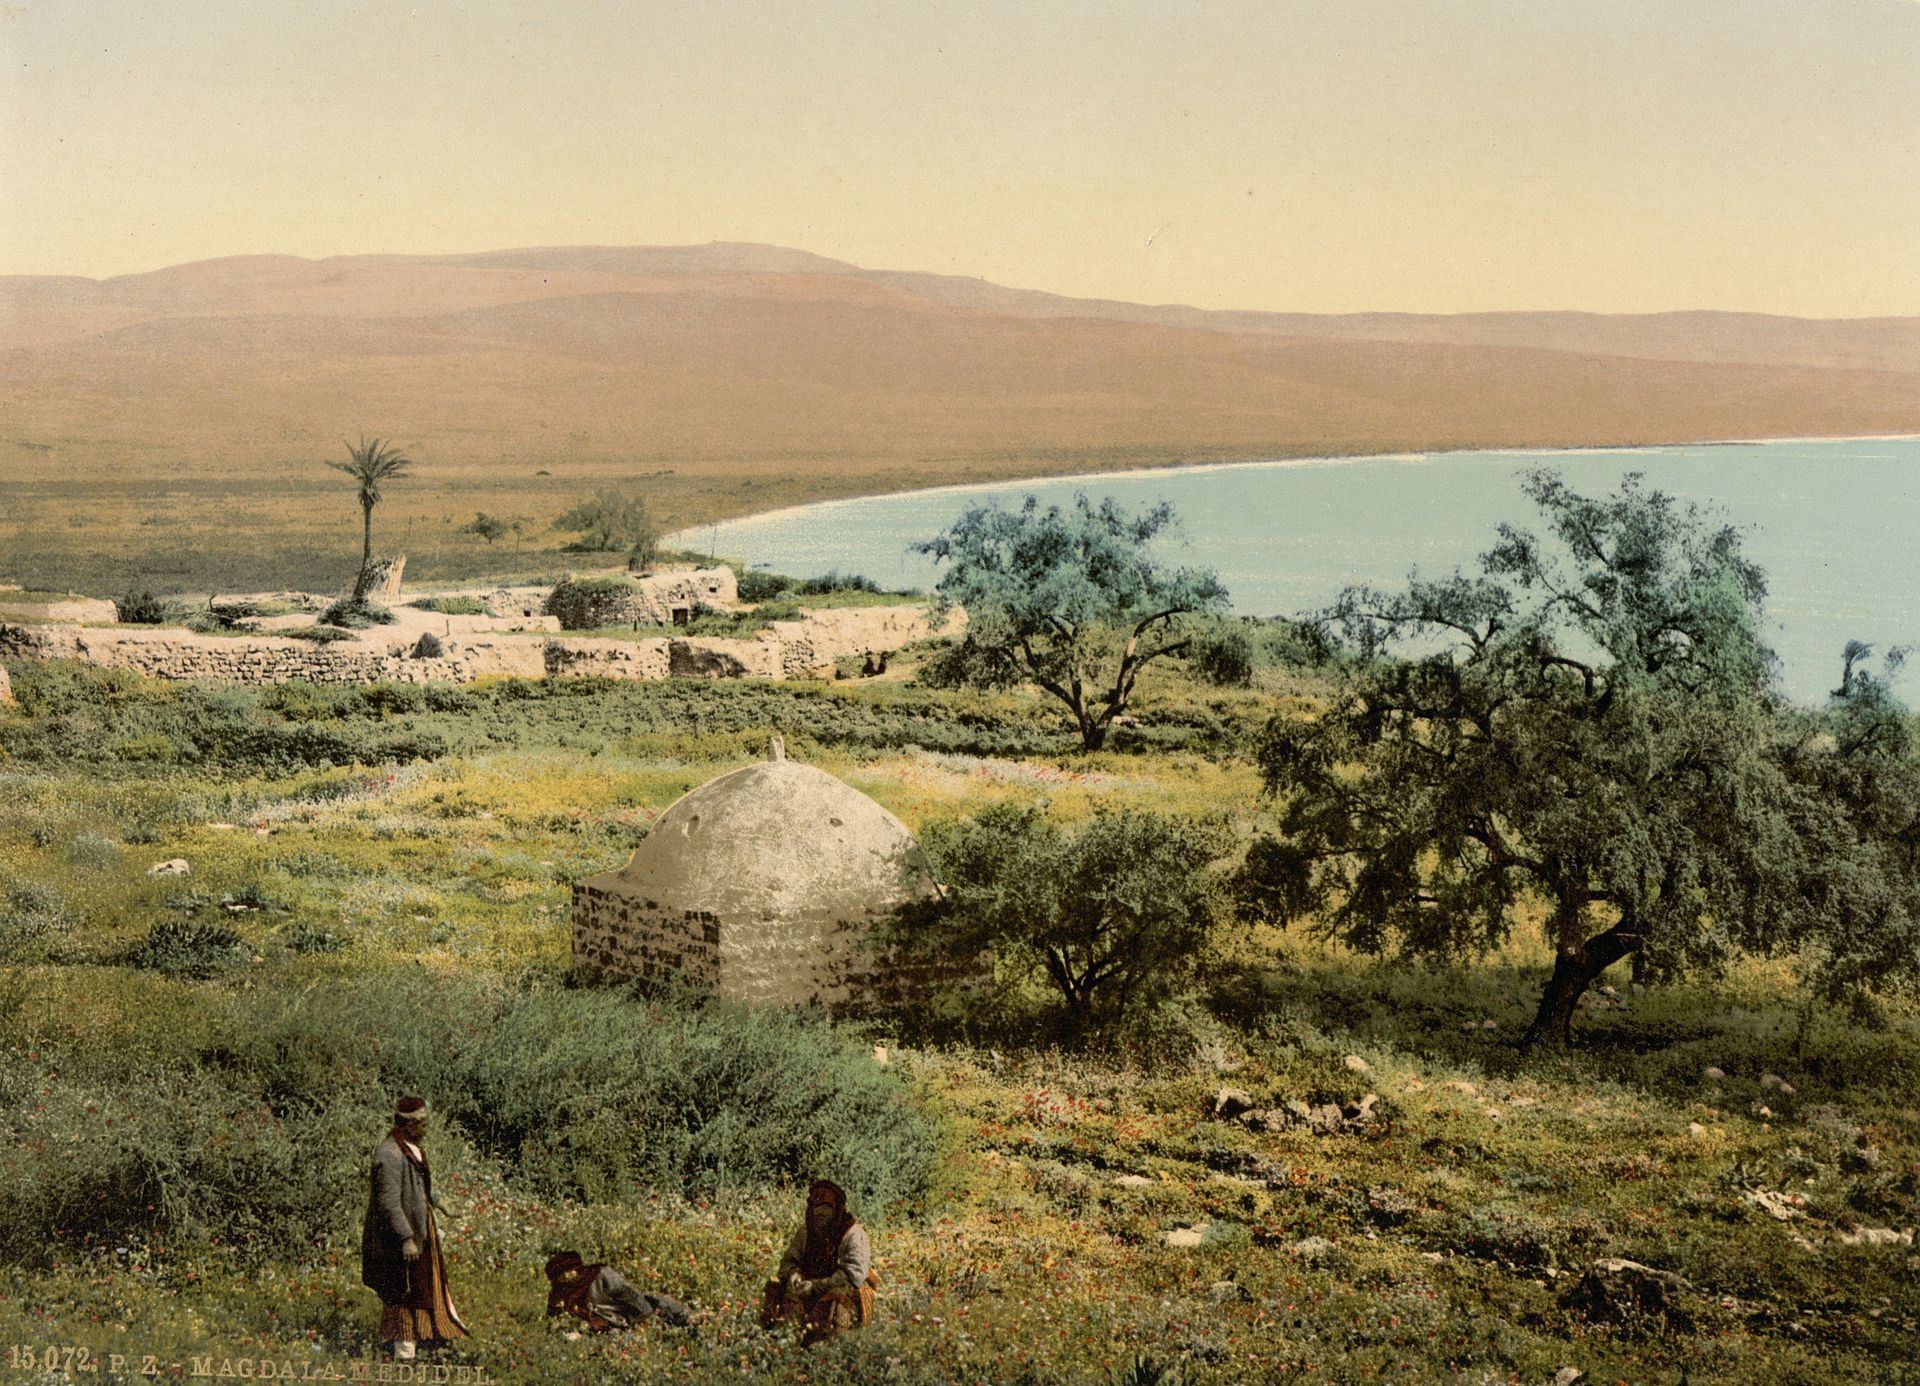 Vue de la ville de Migdal vers 1900 © Wikipedia